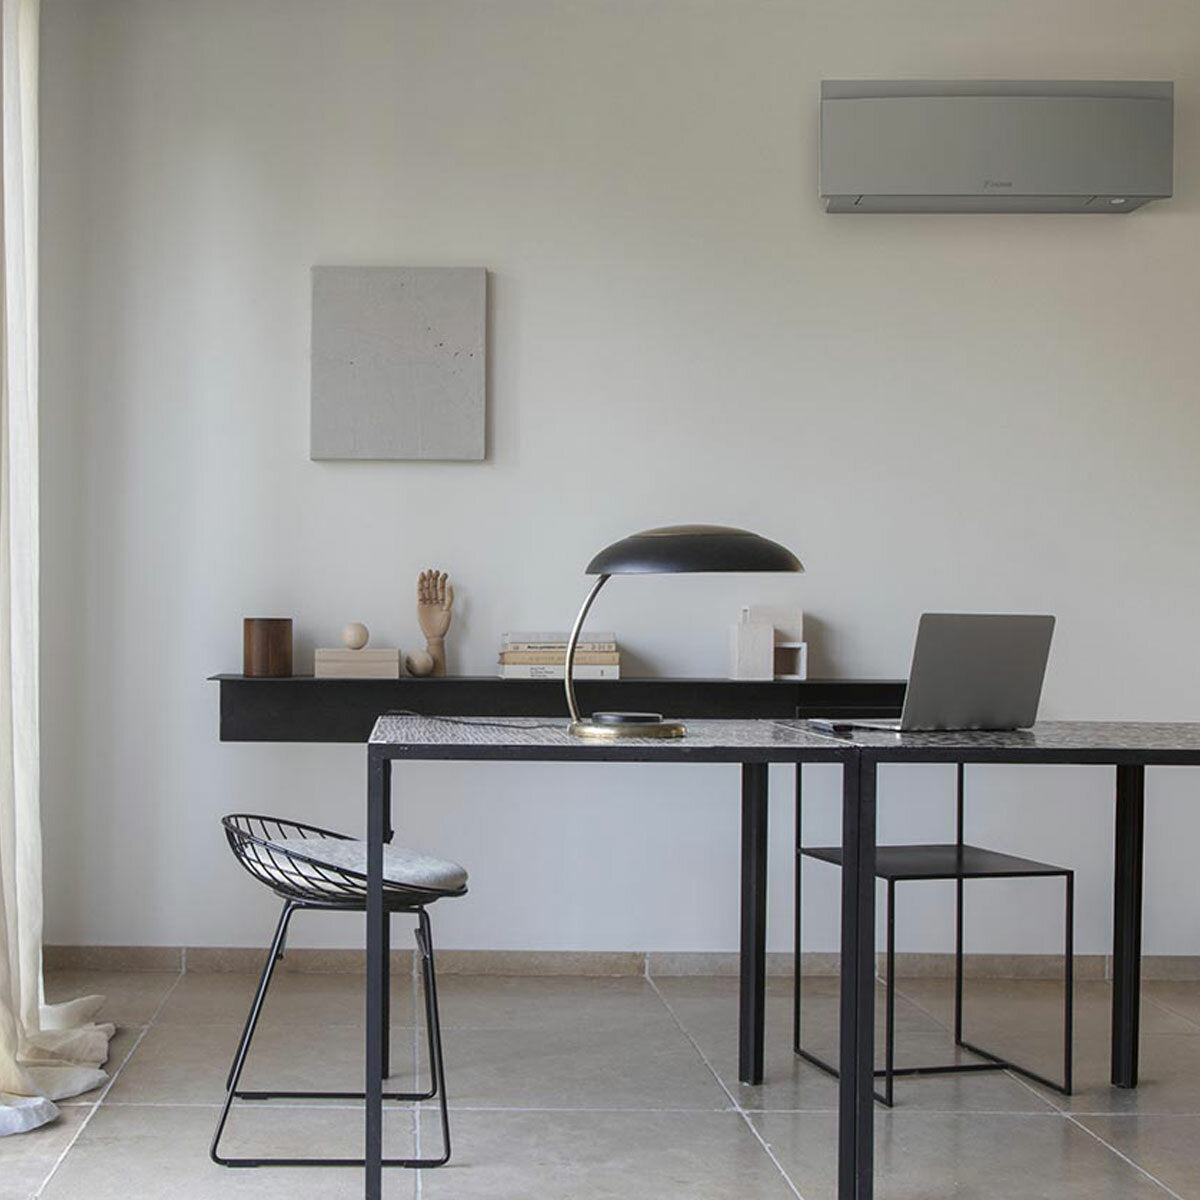 Daikin Emura air conditioner 3 split panels 9000+9000+12000+18000 BTU inverter A+ wifi outdoor unit 7.8 kW Silver